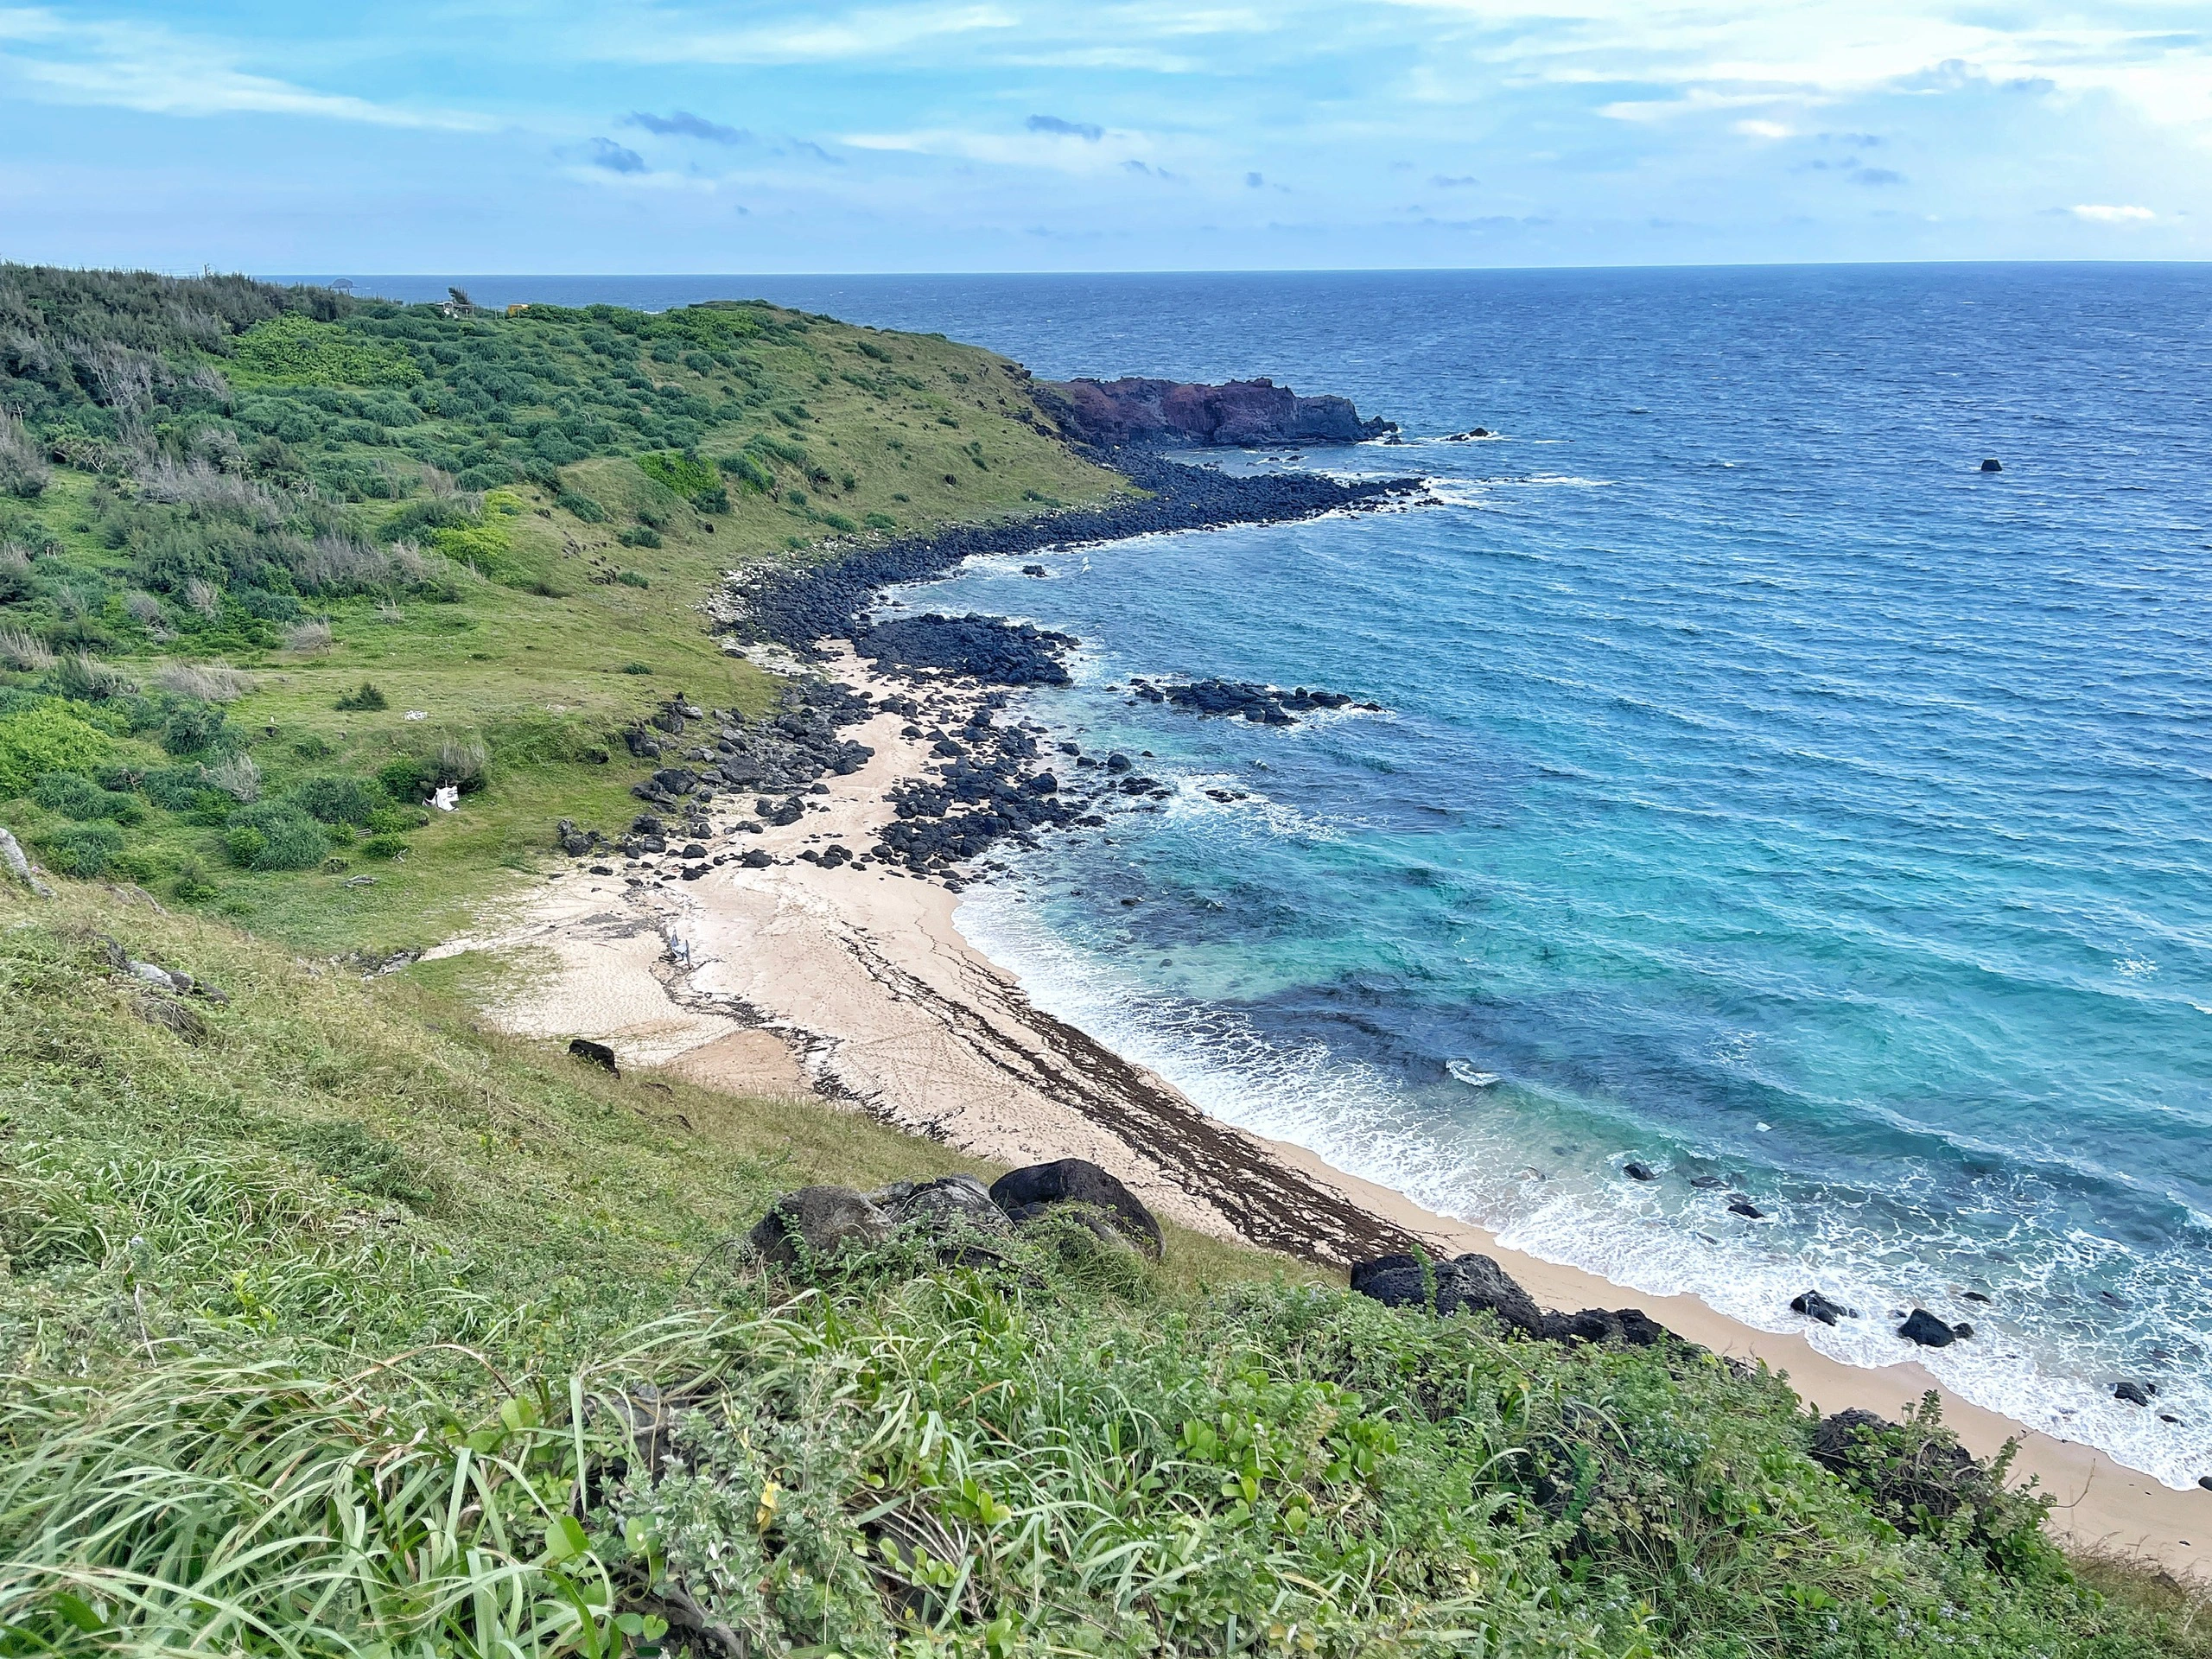 Đảo Phú Quý bắt đầu vào mùa biển xanh nắng vàng chỉ cần đứng vào là có ảnh đẹp, rủ nhau đi du lịch thôi các chị em - Ảnh 1.